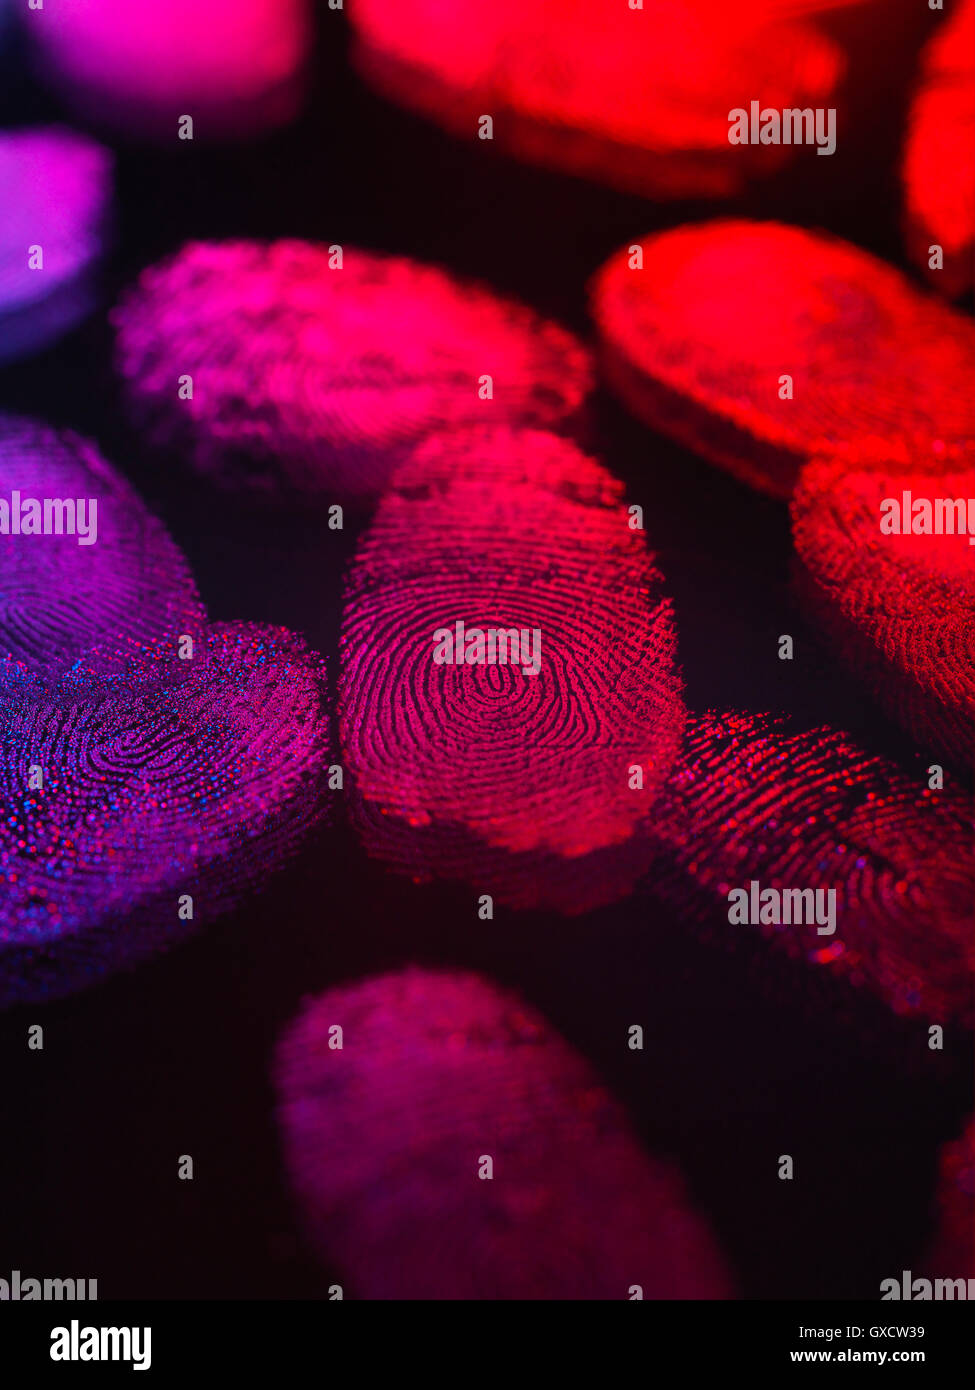 L'identité, les empreintes digitales humaines illustré à l'aide de la lumière Banque D'Images